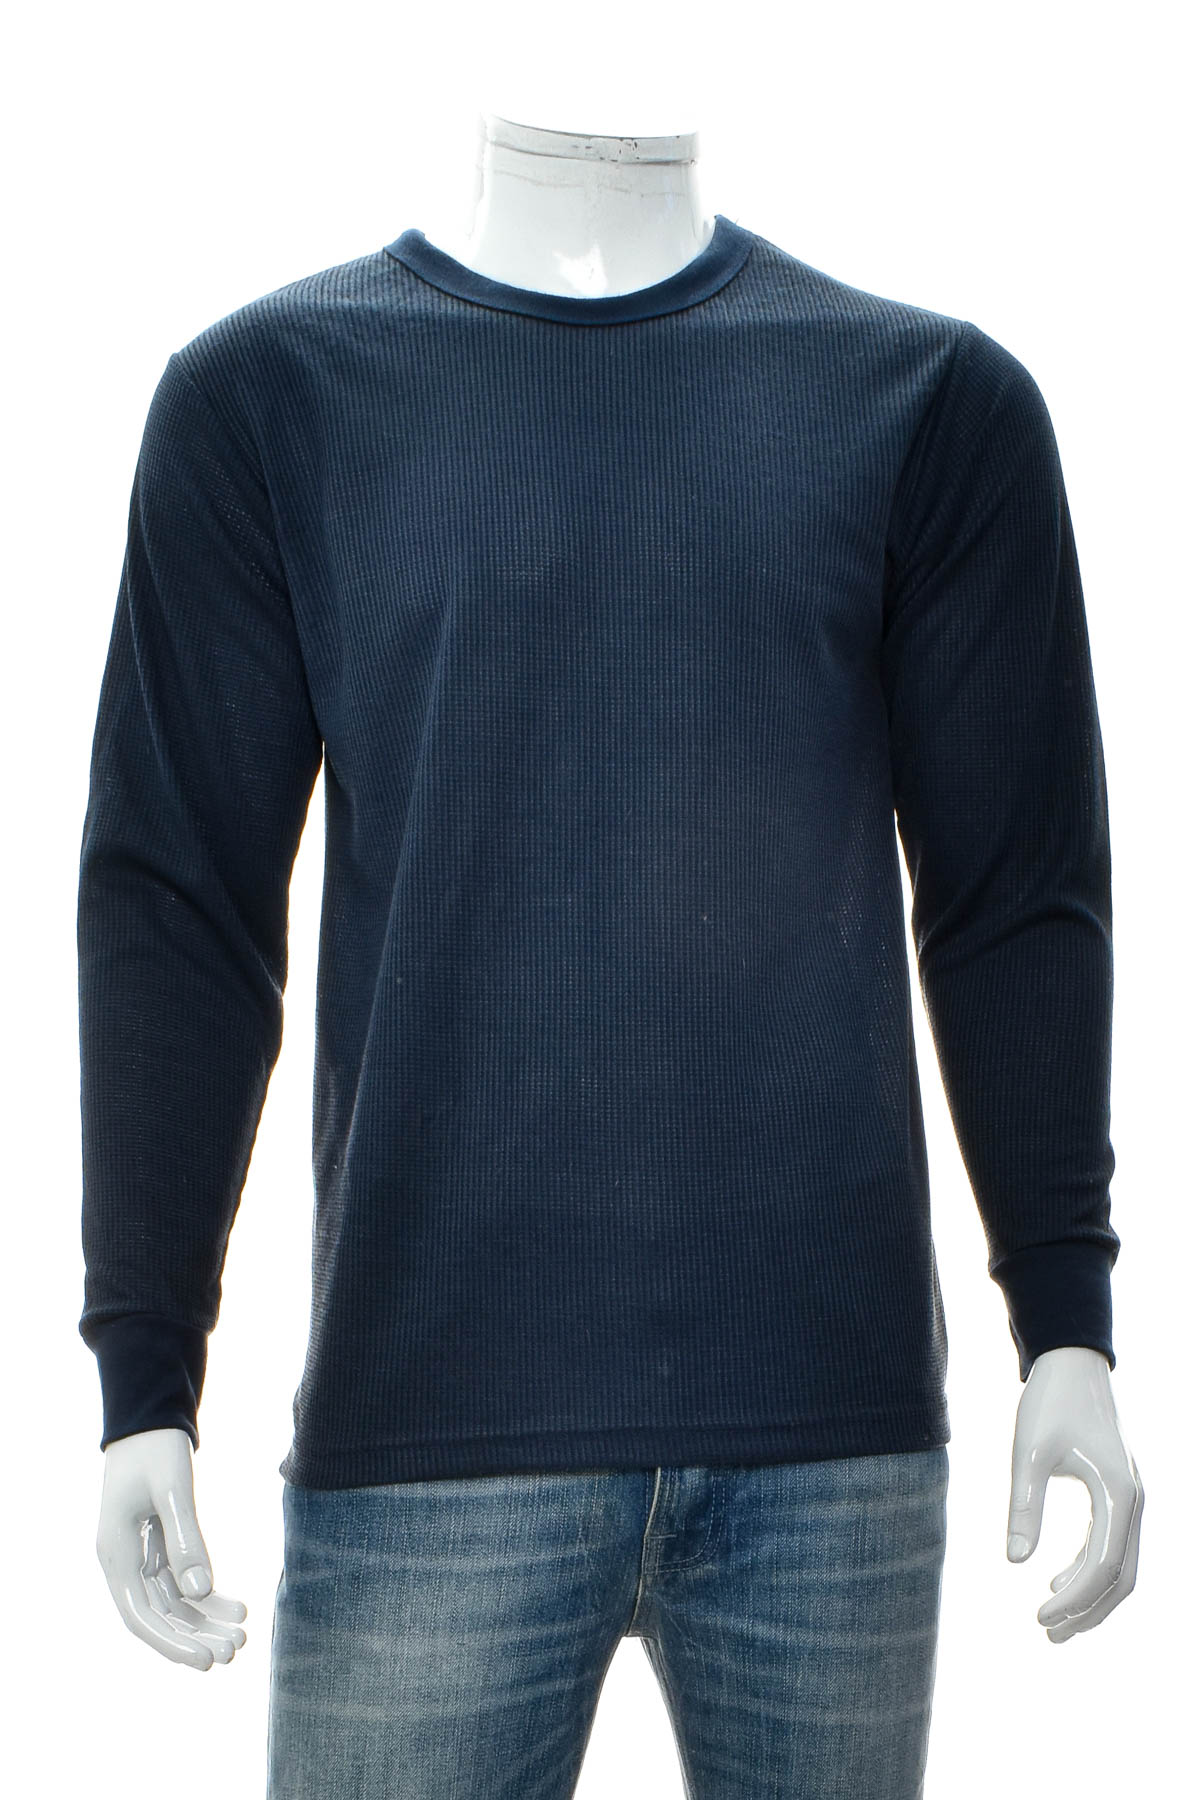 Men's sweater - CARIBBEAN JOE - 0